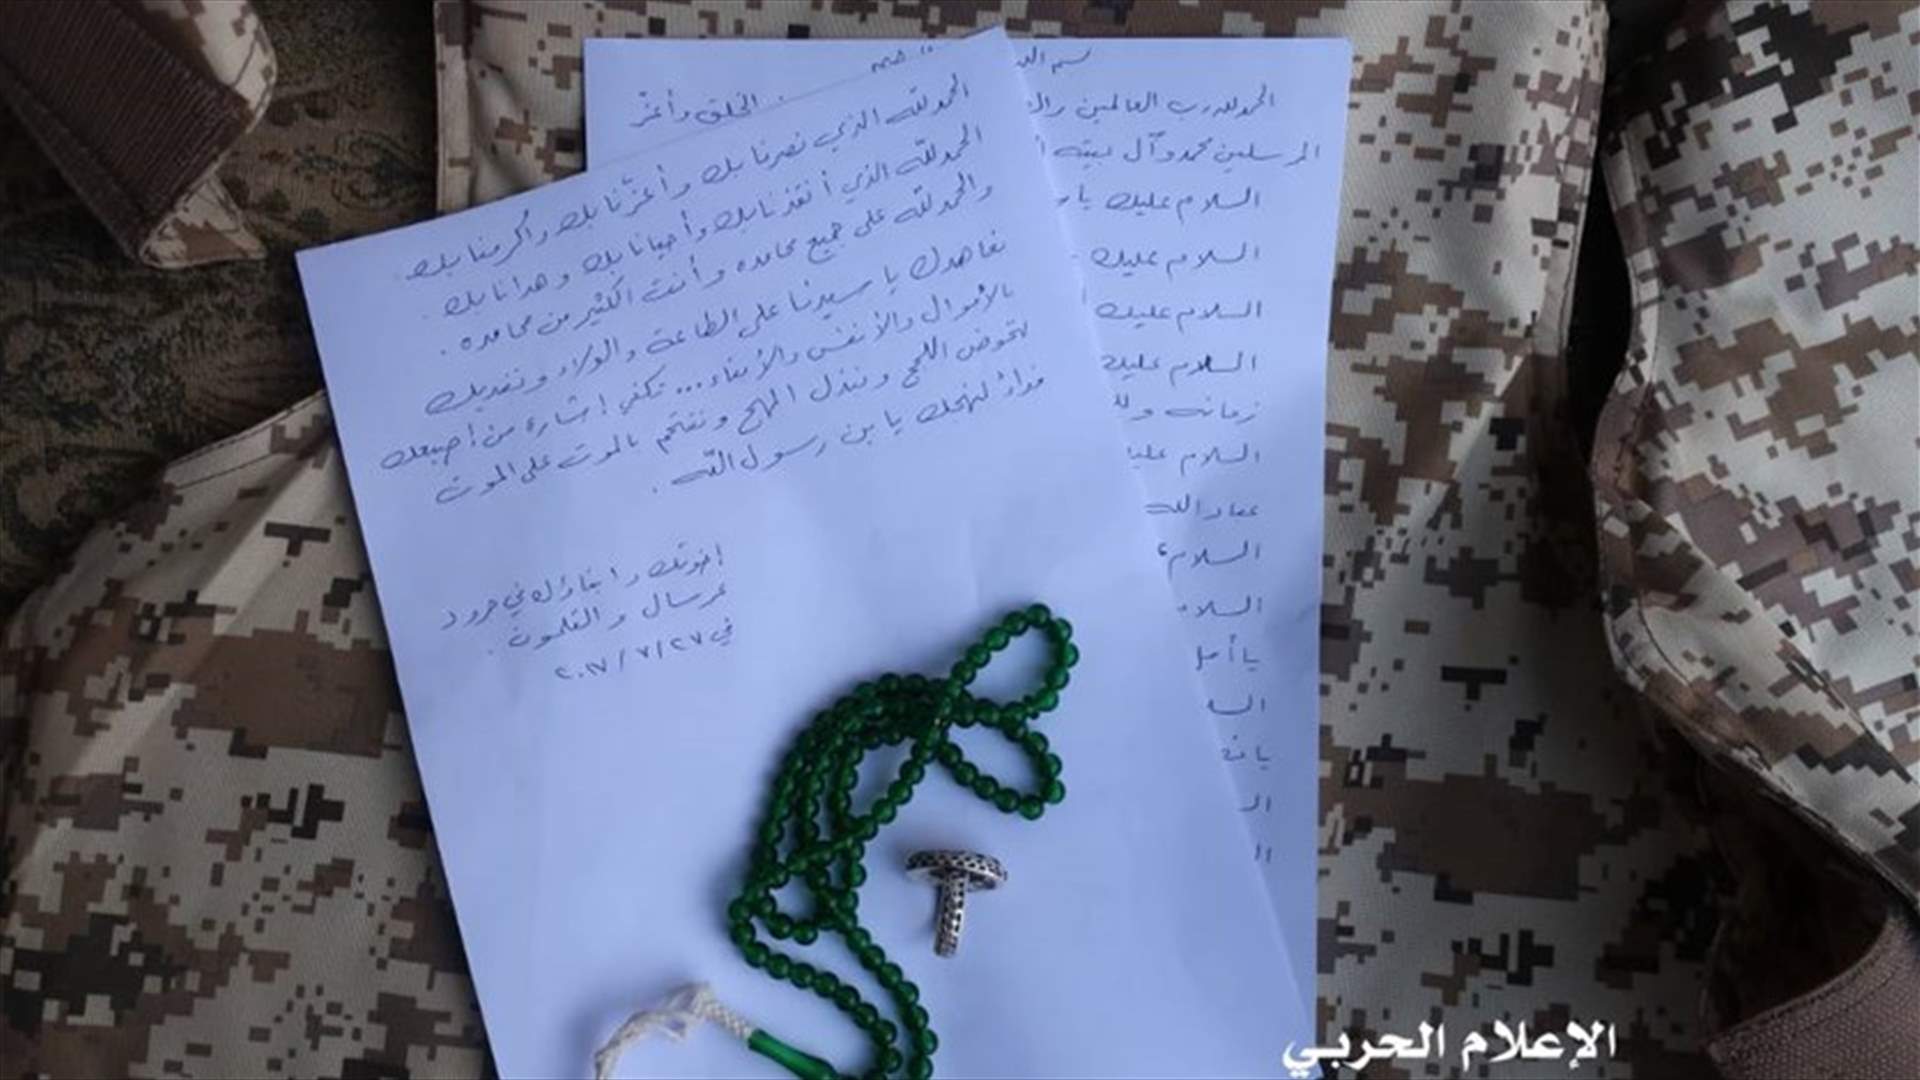 بالصور- رسالة من مقاتلي حزب الله للسيد حسن نصرالله...